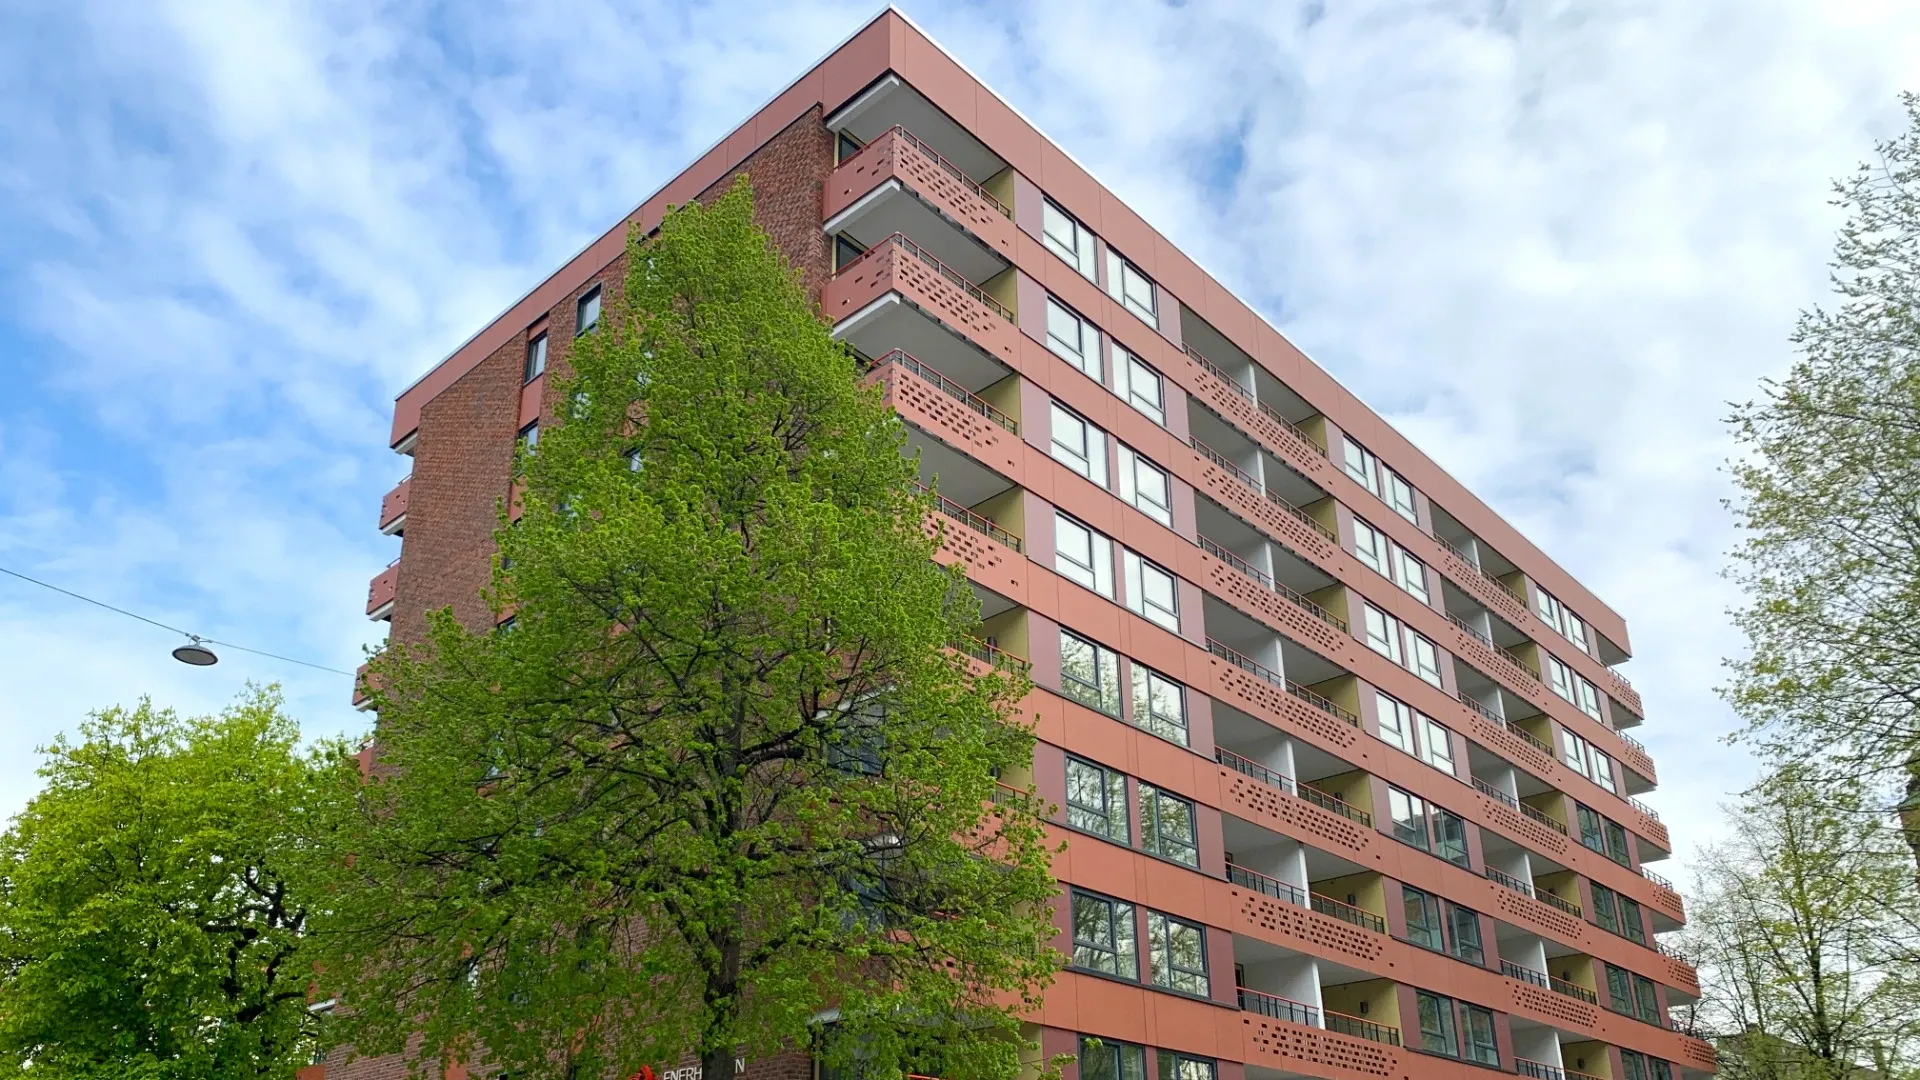 Et bilde av Enerhaugen Studenthus. Bildet viser en rød høyblokk med balkonger. Det er flere trær rundt studenthuset. 